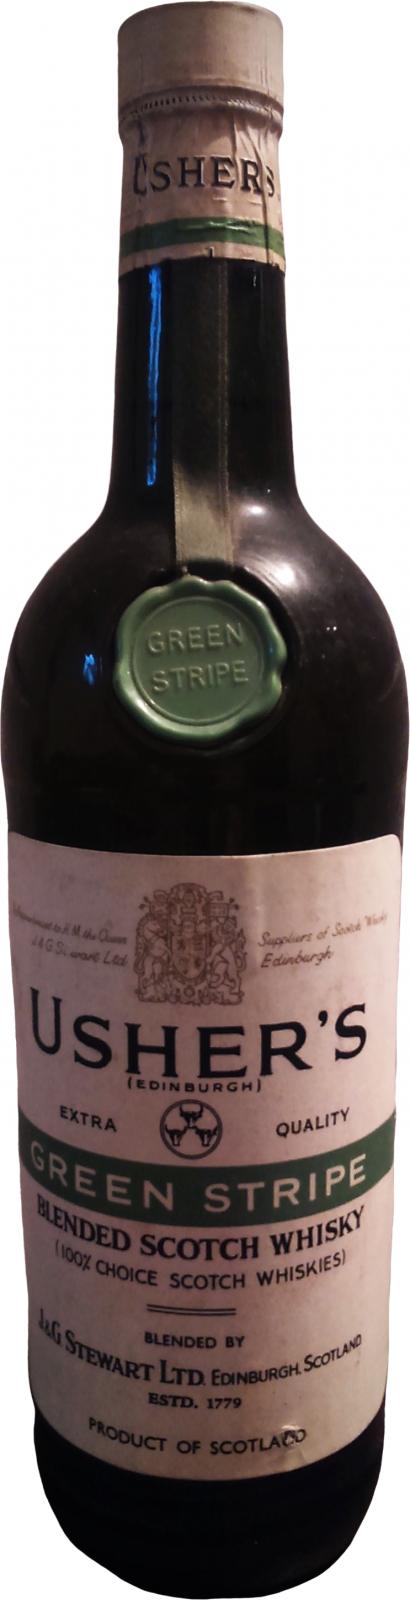 Usher's Green Stripe Blended Scotch Whisky 43% 750ml